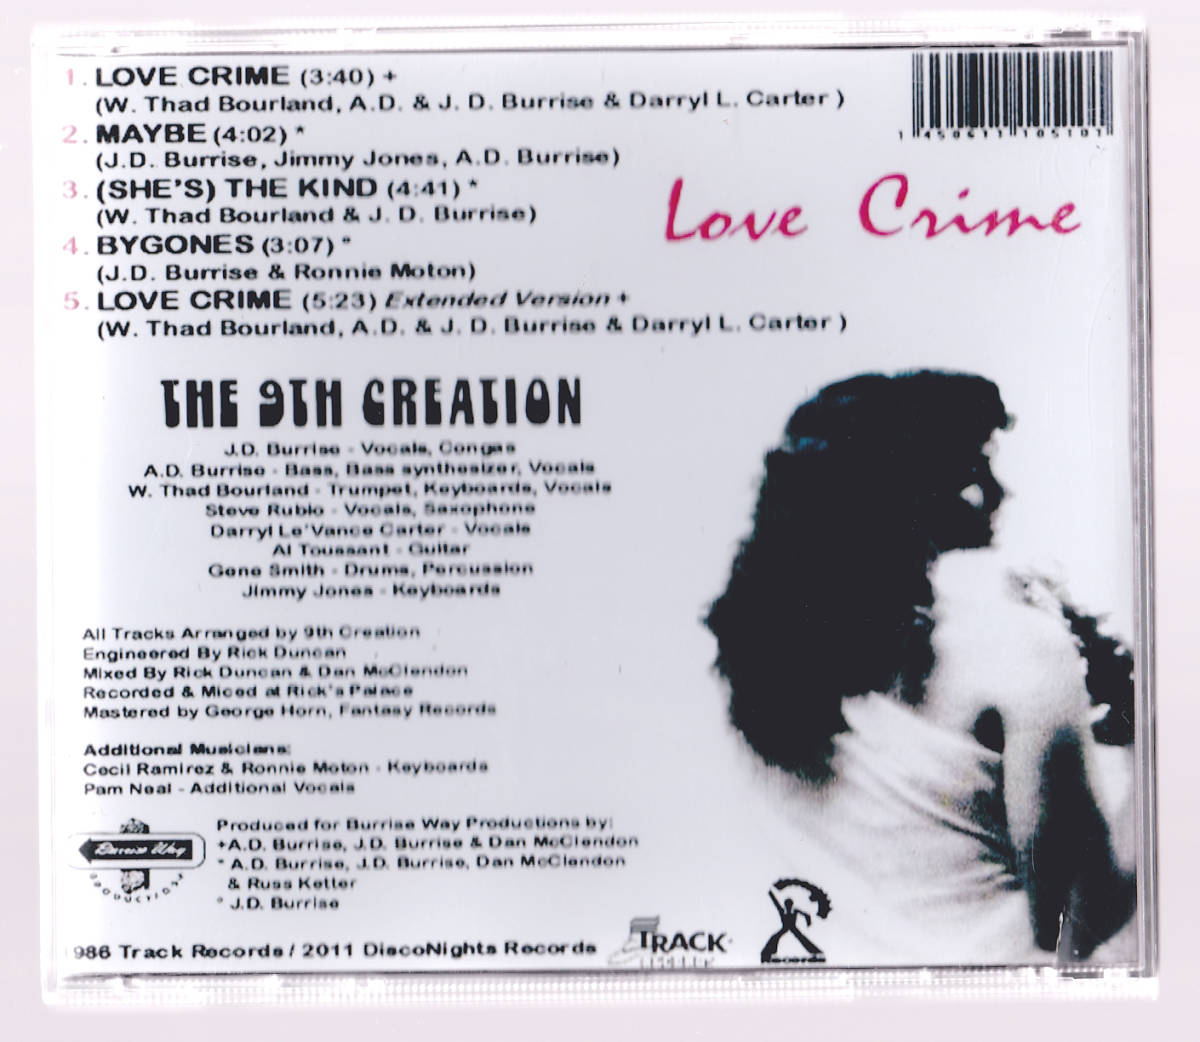 ダンクラ CD★THE 9TH CREATION / Maybe [Love crime 5:23] ロングバージョン収録の5曲入り★Track★